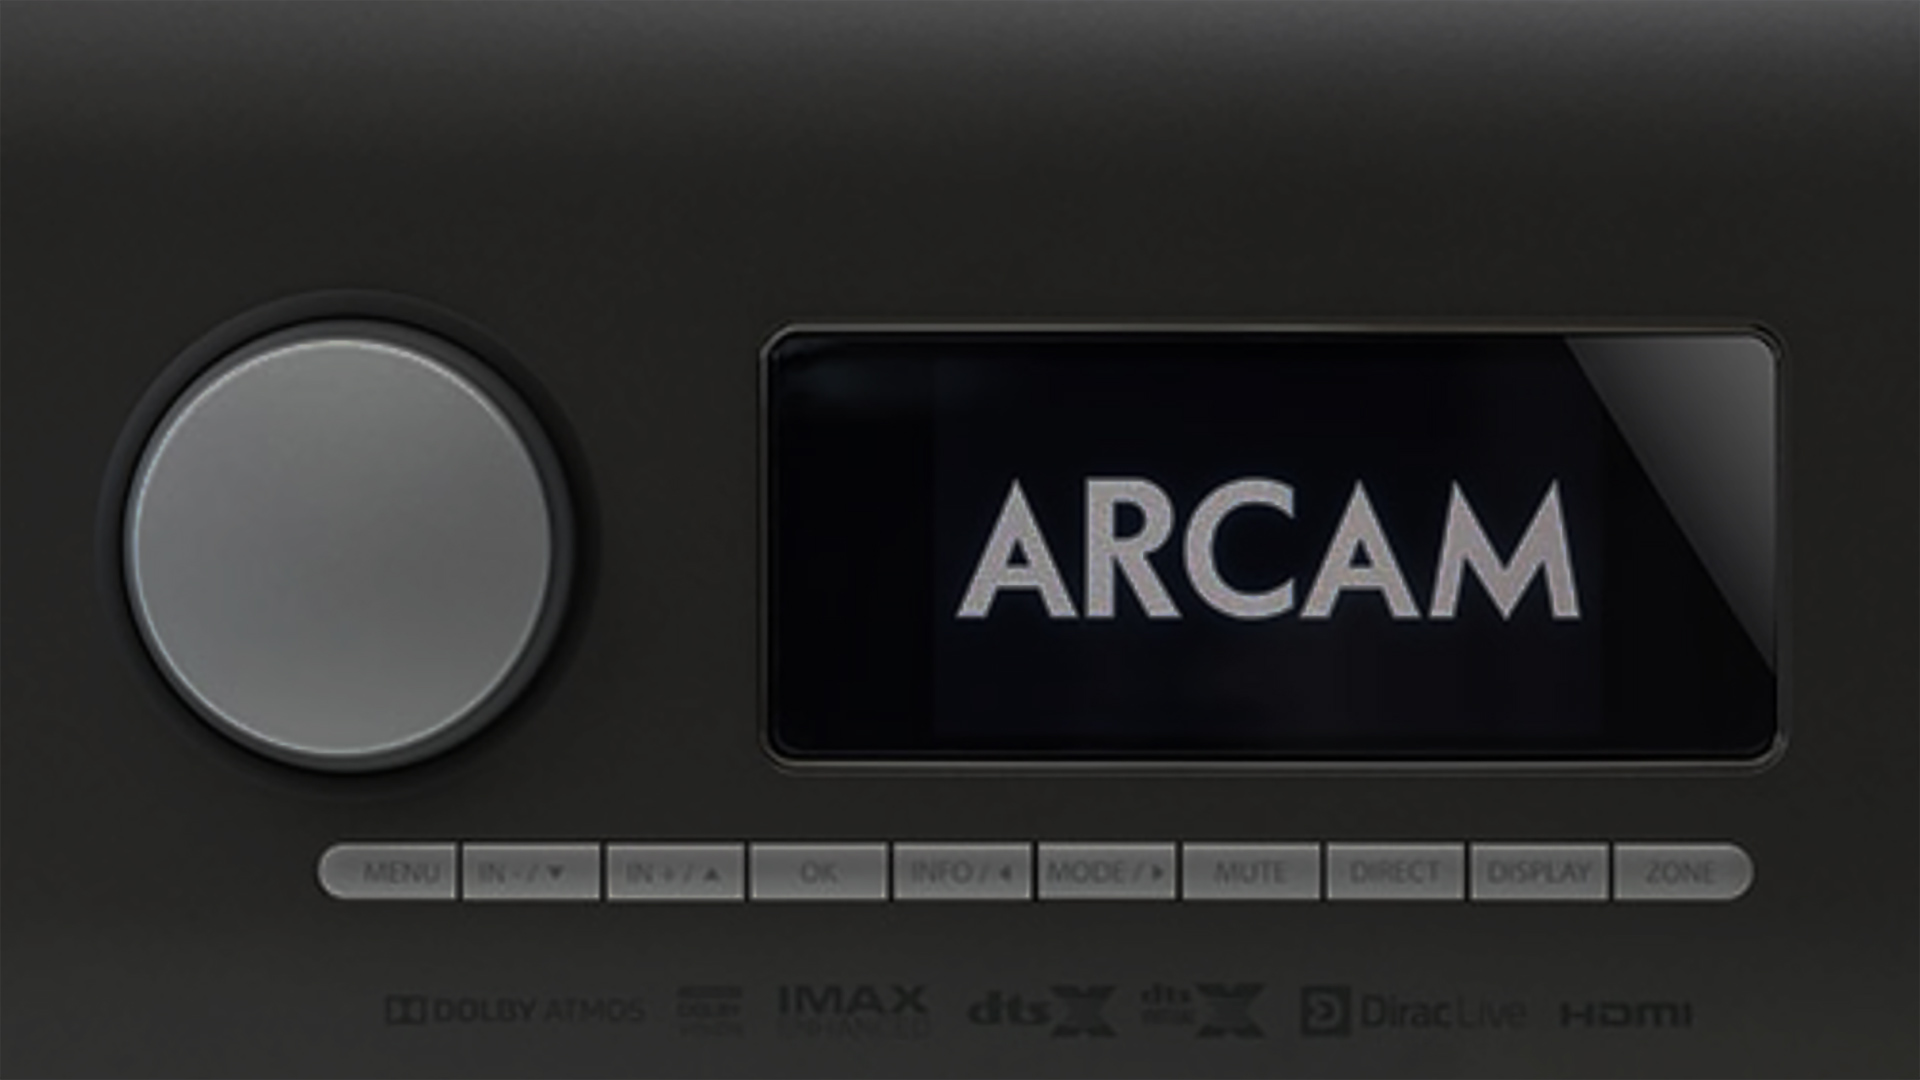 New Arcam AV Products | Unilet Sound & Vision